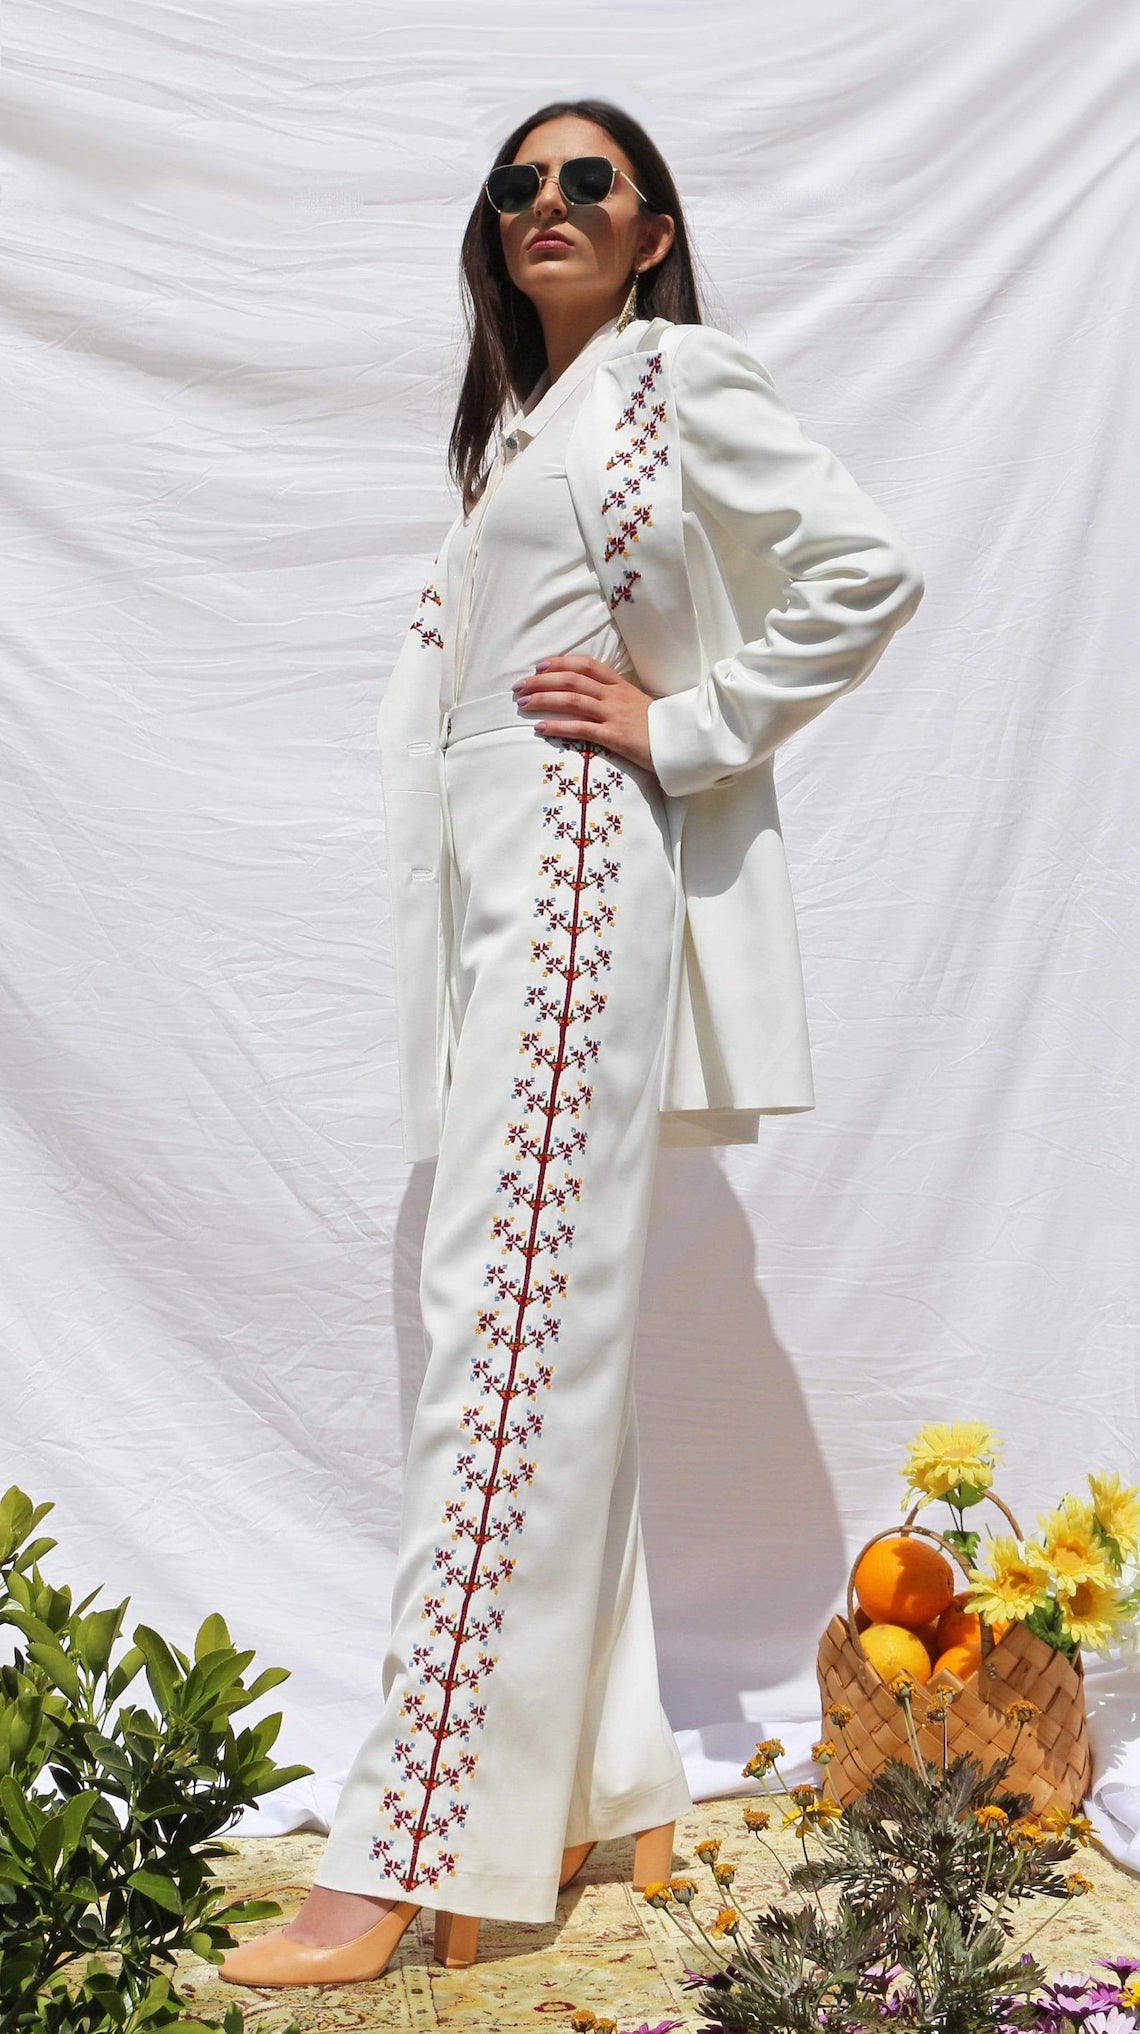 Deerah Embroidered Wedding Pantsuit Killer Bridal Pantsuits for 2021 2022 Brides Bridal Musings 2 - 15 bộ quần áo cưới Killer dành cho cô dâu 2021/2022